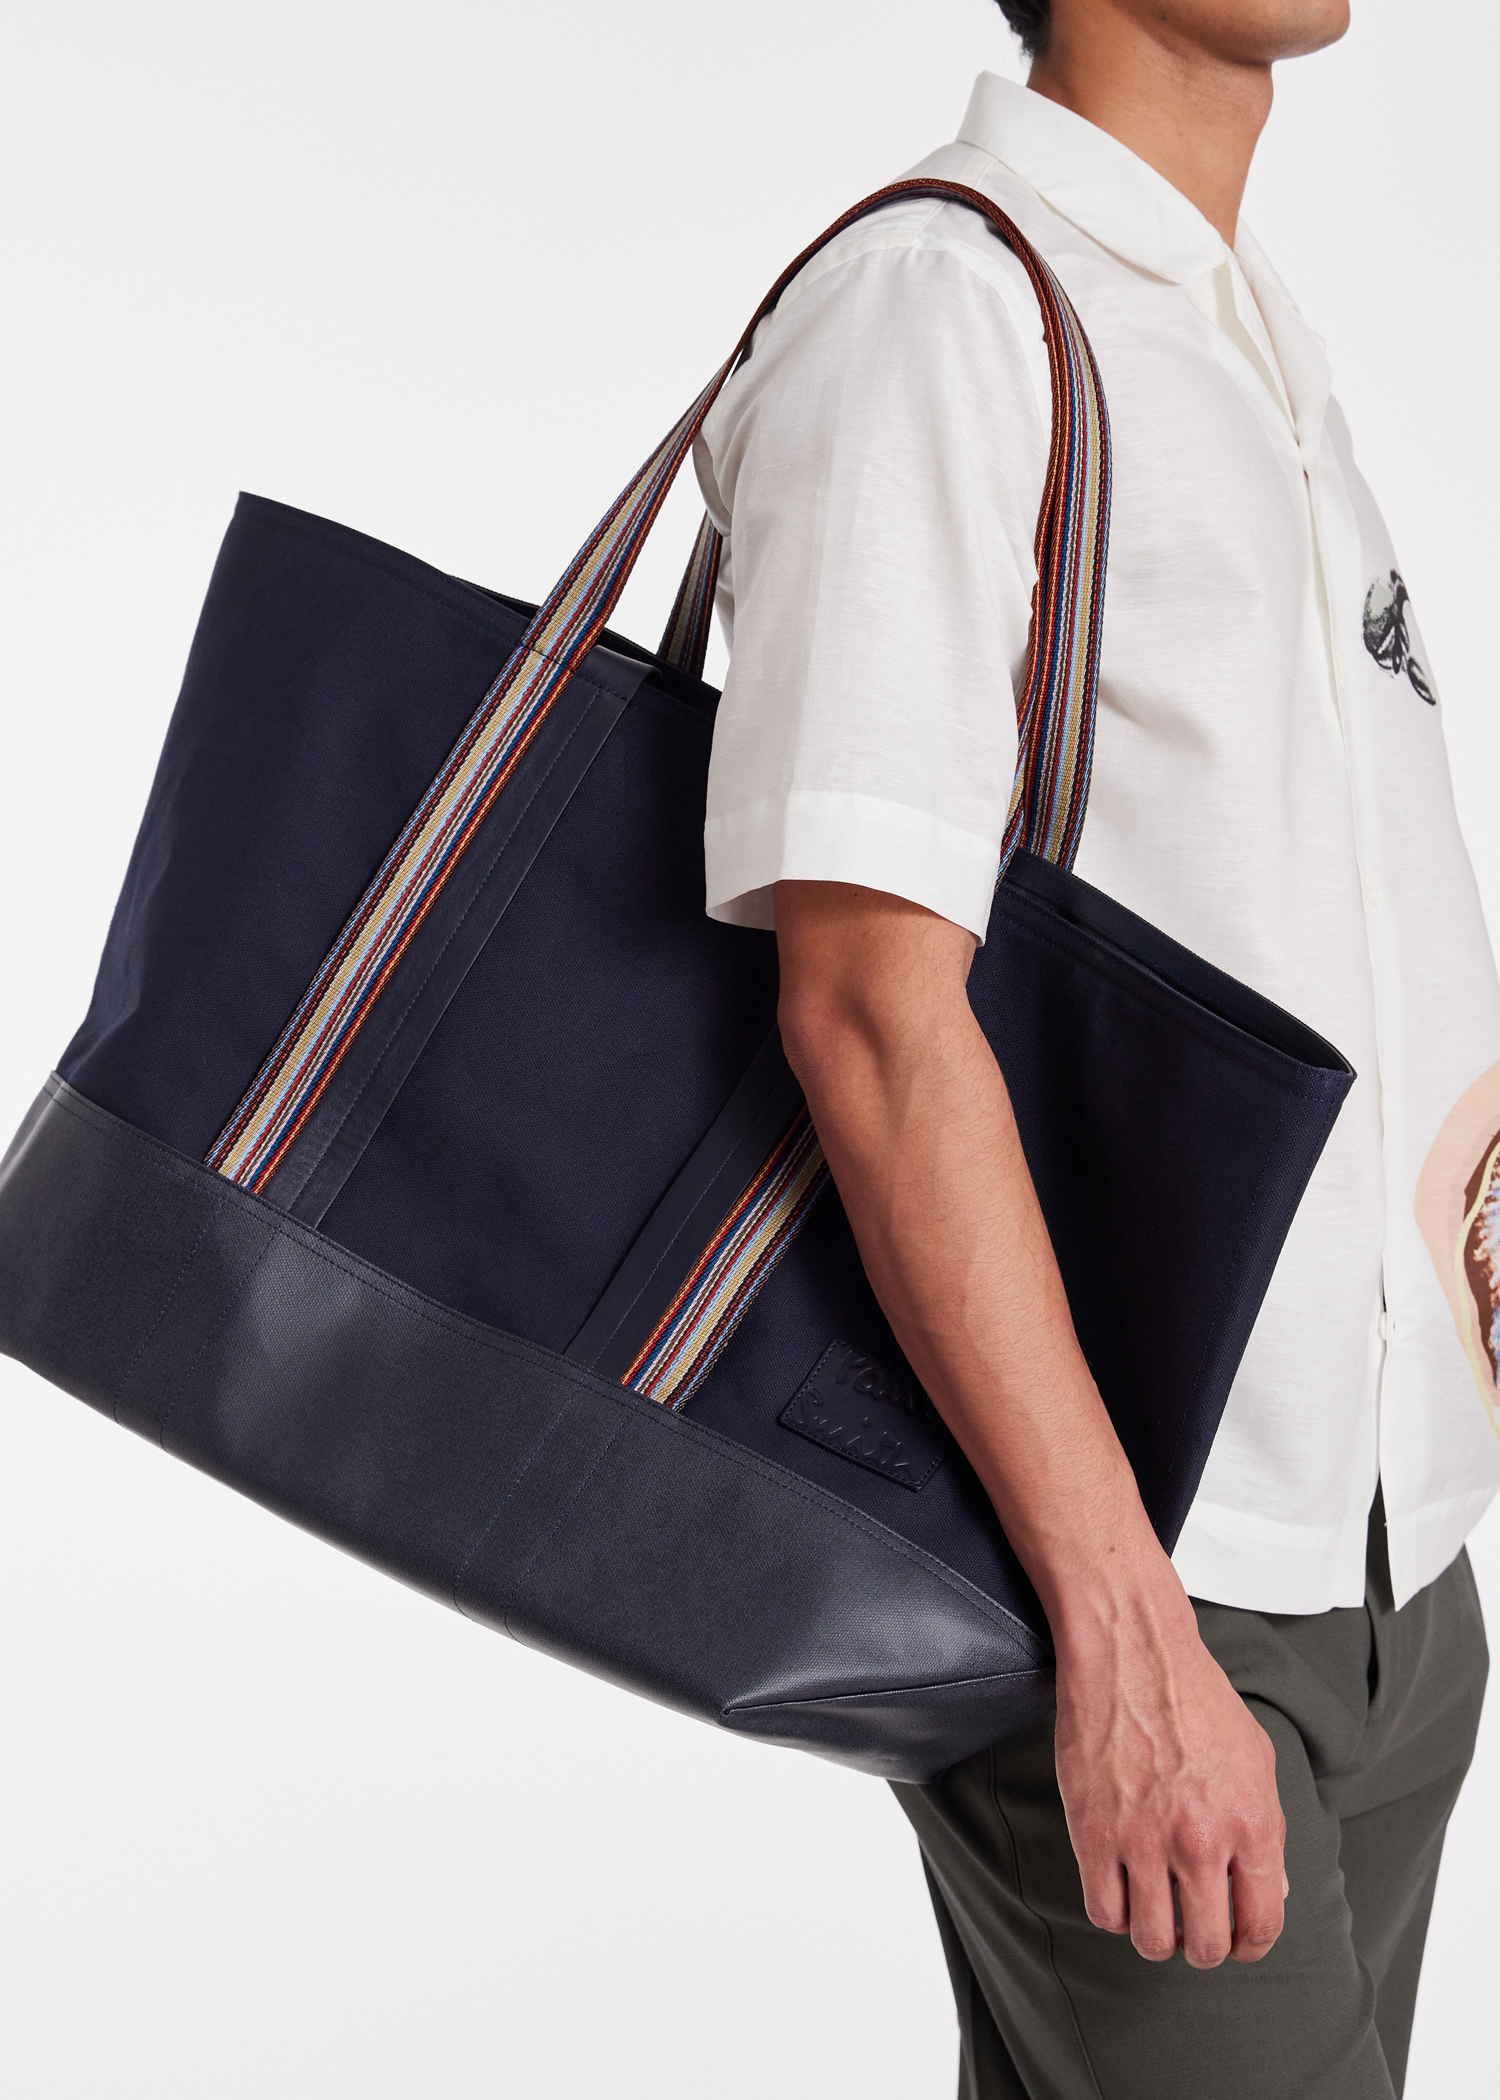 Designer Bags for Men | Paul Smith